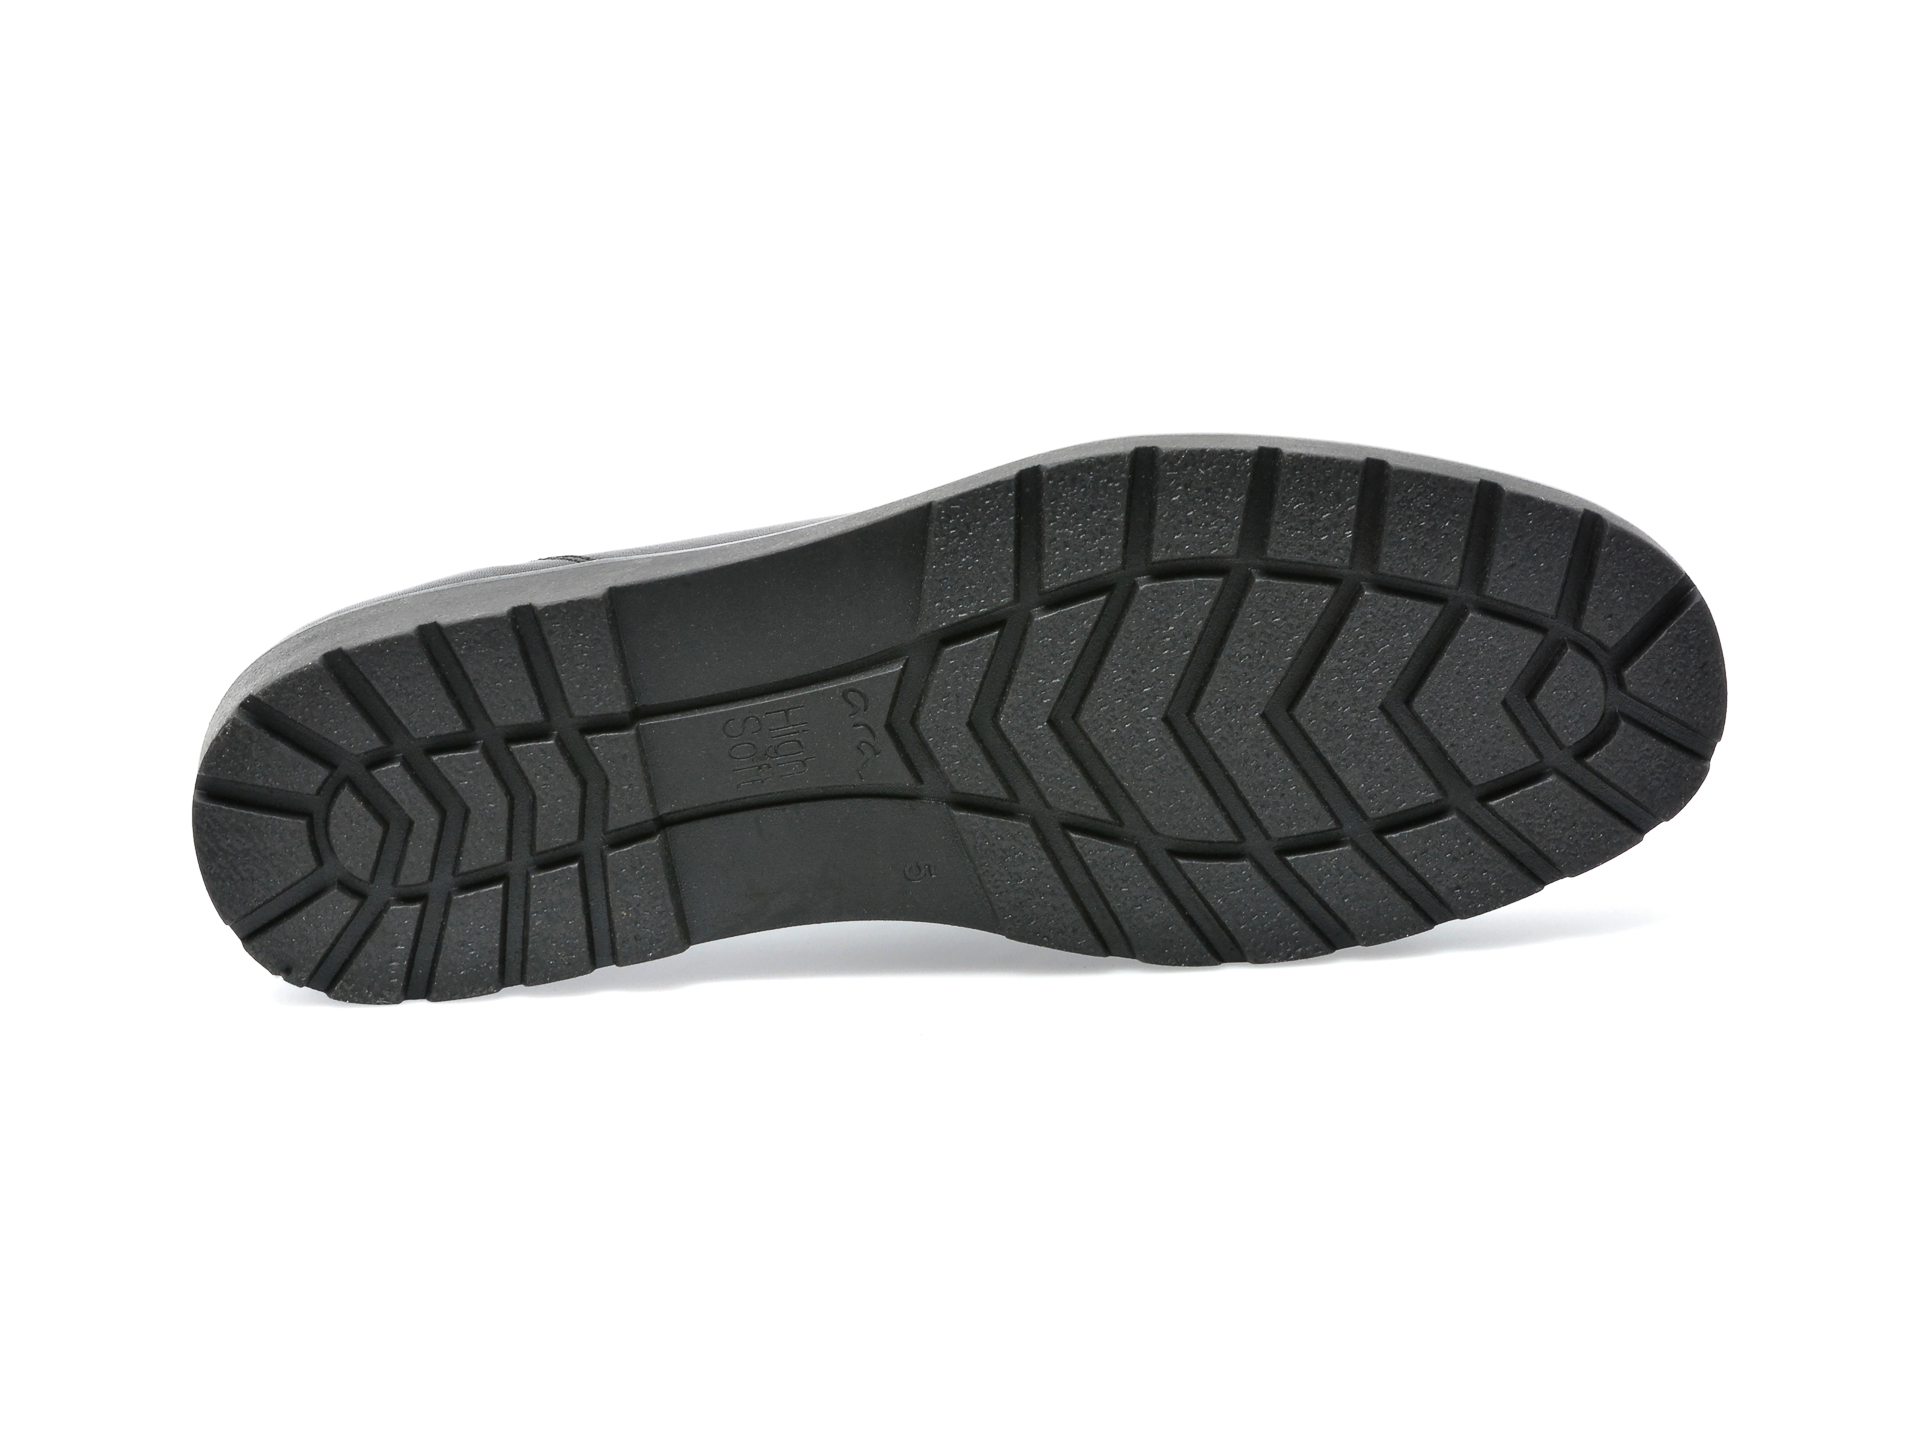 Poze Pantofi ARA negri, 14803, din piele naturala Tezyo